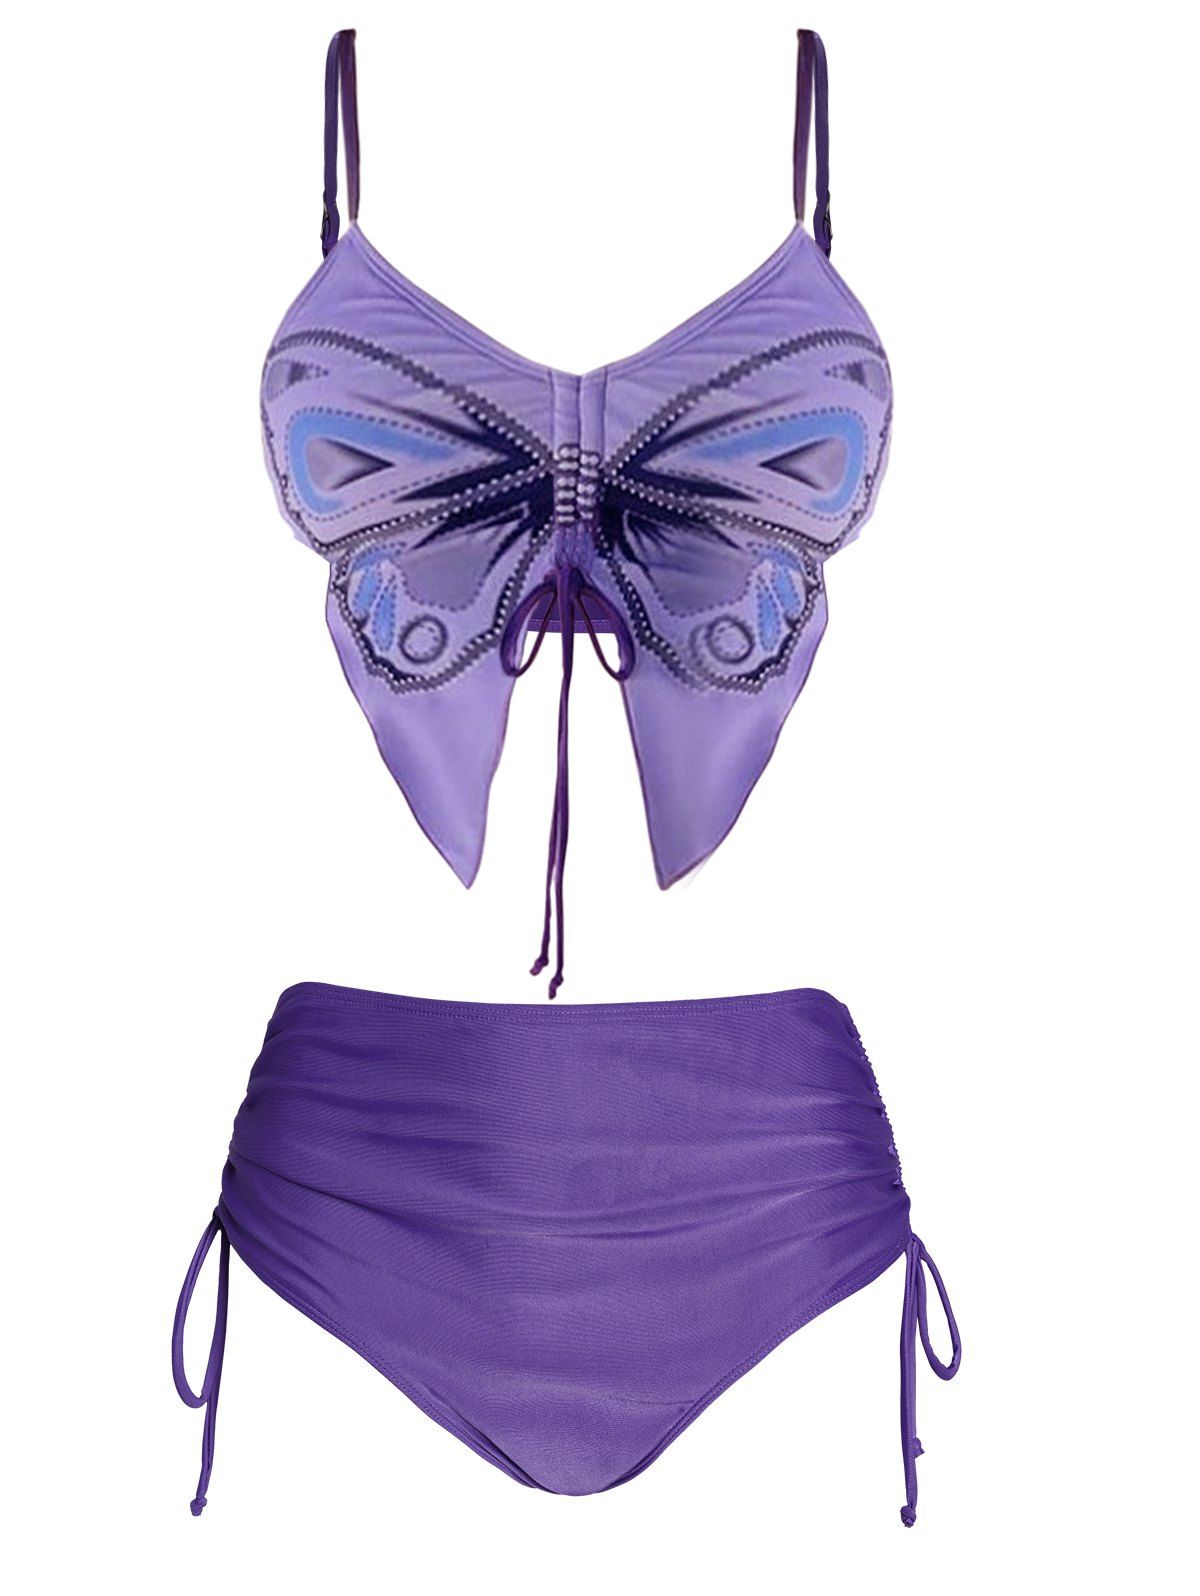 Butterfly Shape Bikini Swimsuit Cinched Padded Bikini Two Piece Swimwear High Waist Bathing Suit - LIGHT PURPLE L